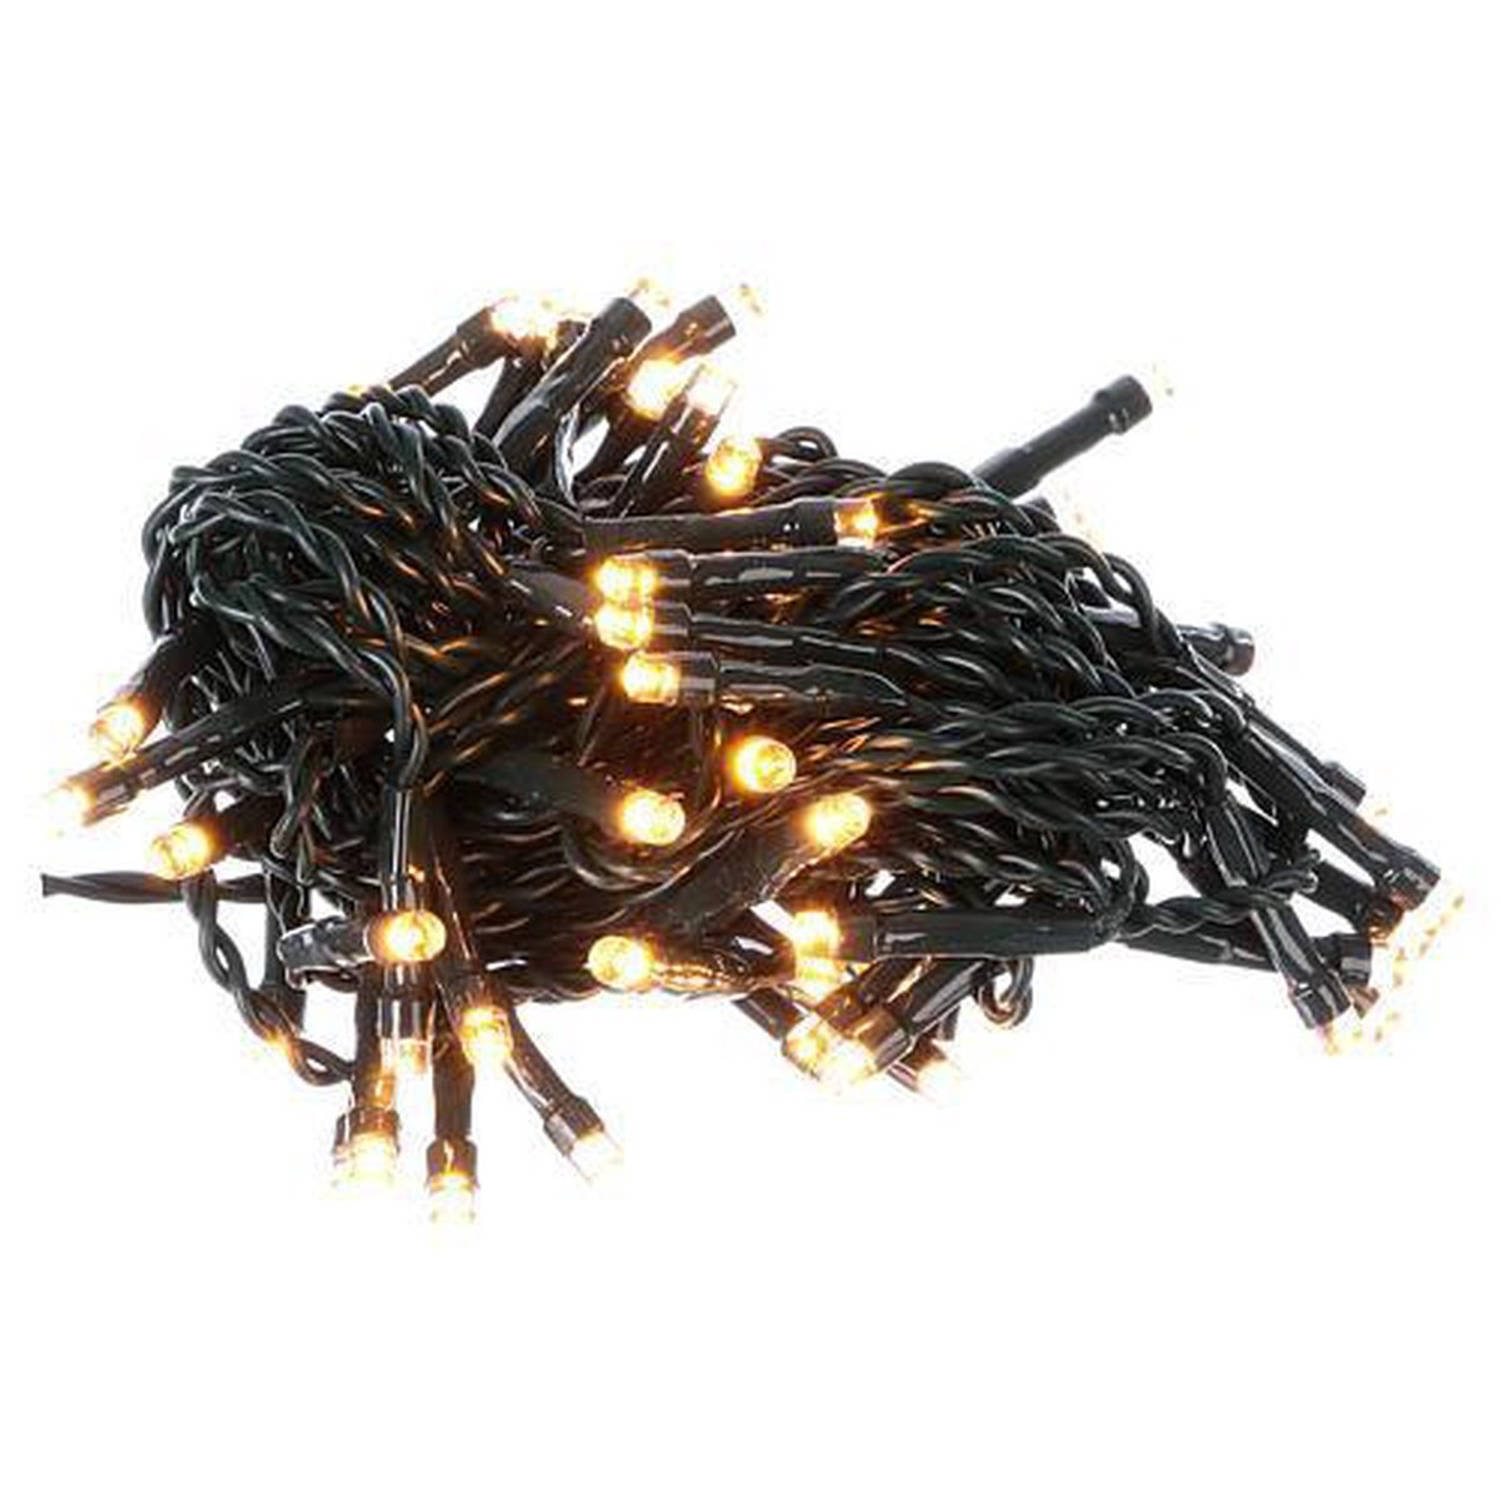 Kerstverlichting Warm-wit 100 Ledlampjes 7,4 + 3 Meter Seizoensdecoratie Kleur: Zwart